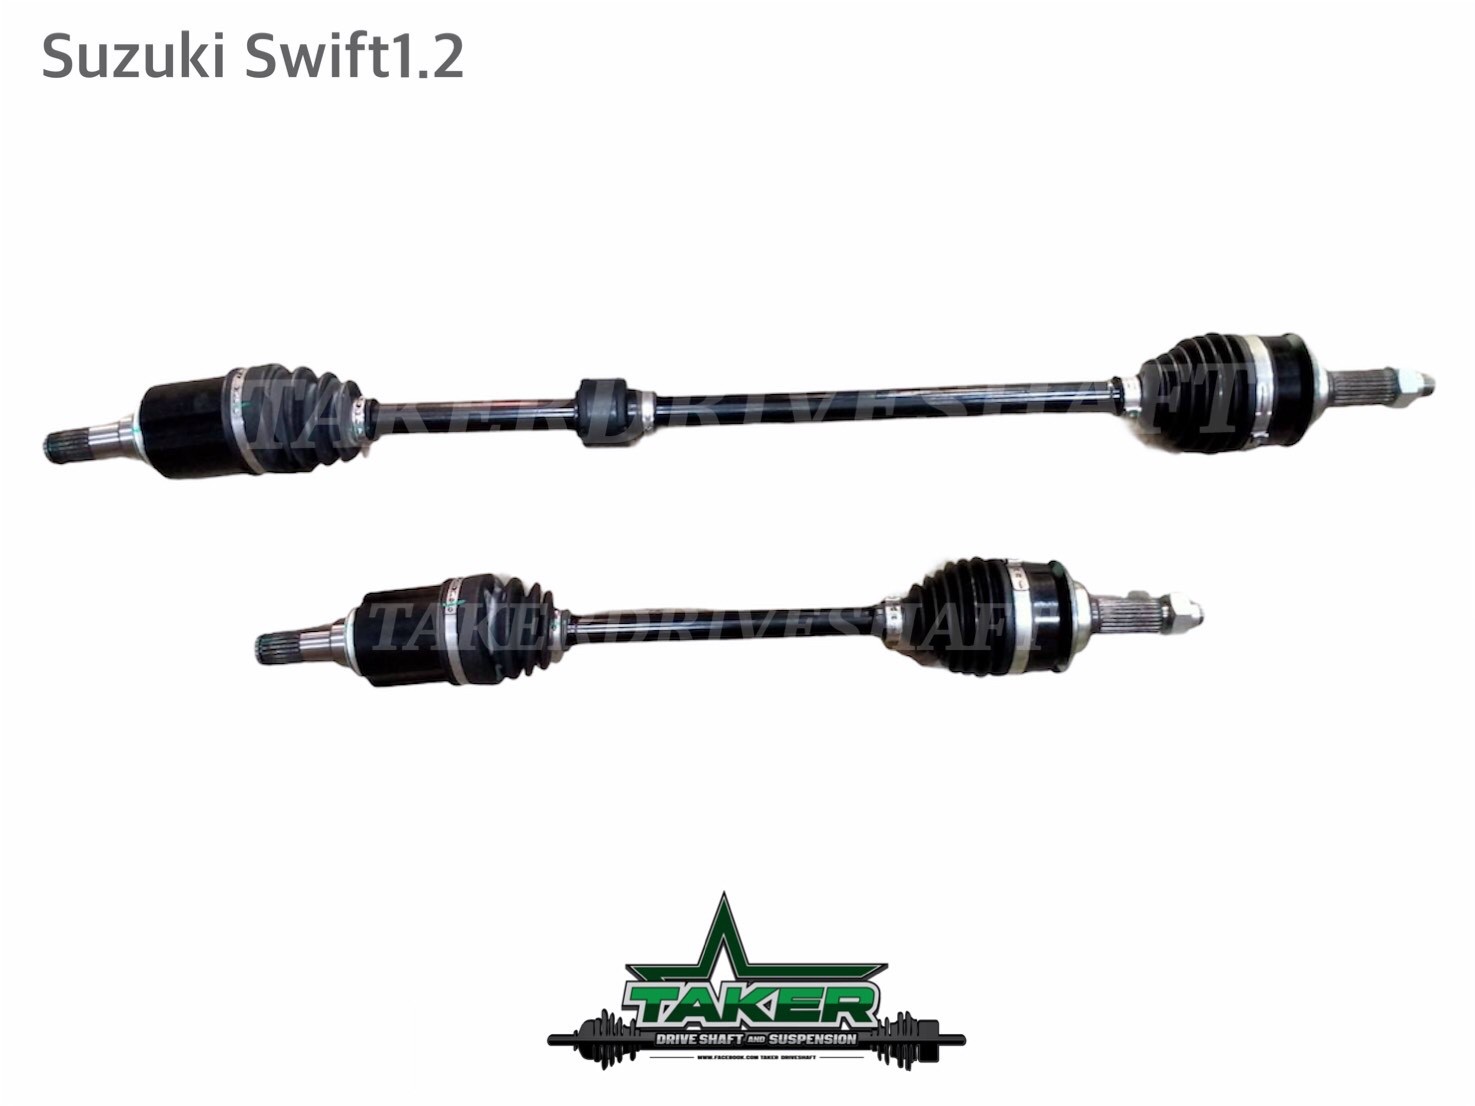 เพลาขับ เพลาขับหน้า Taker Driveshaft แบบ Standard สำหรับ Suzuki Swift เครื่อง1.2  แบบแยกข้าง